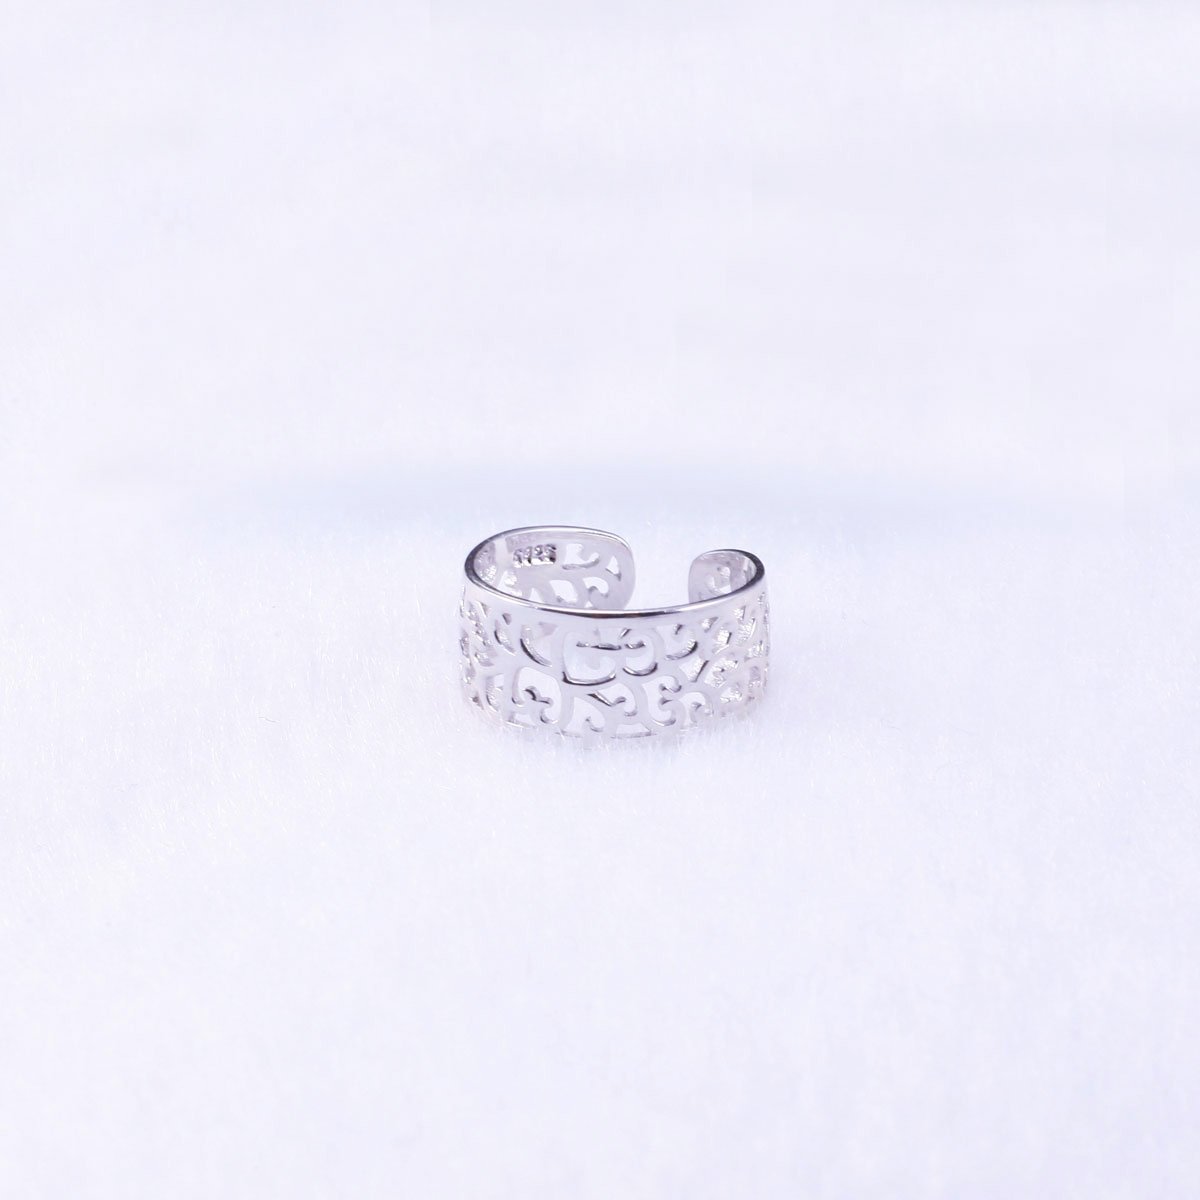 VIKI LYNN Toe Rings for Women Sterling Silver Adjustable Open Rings Tail Ring